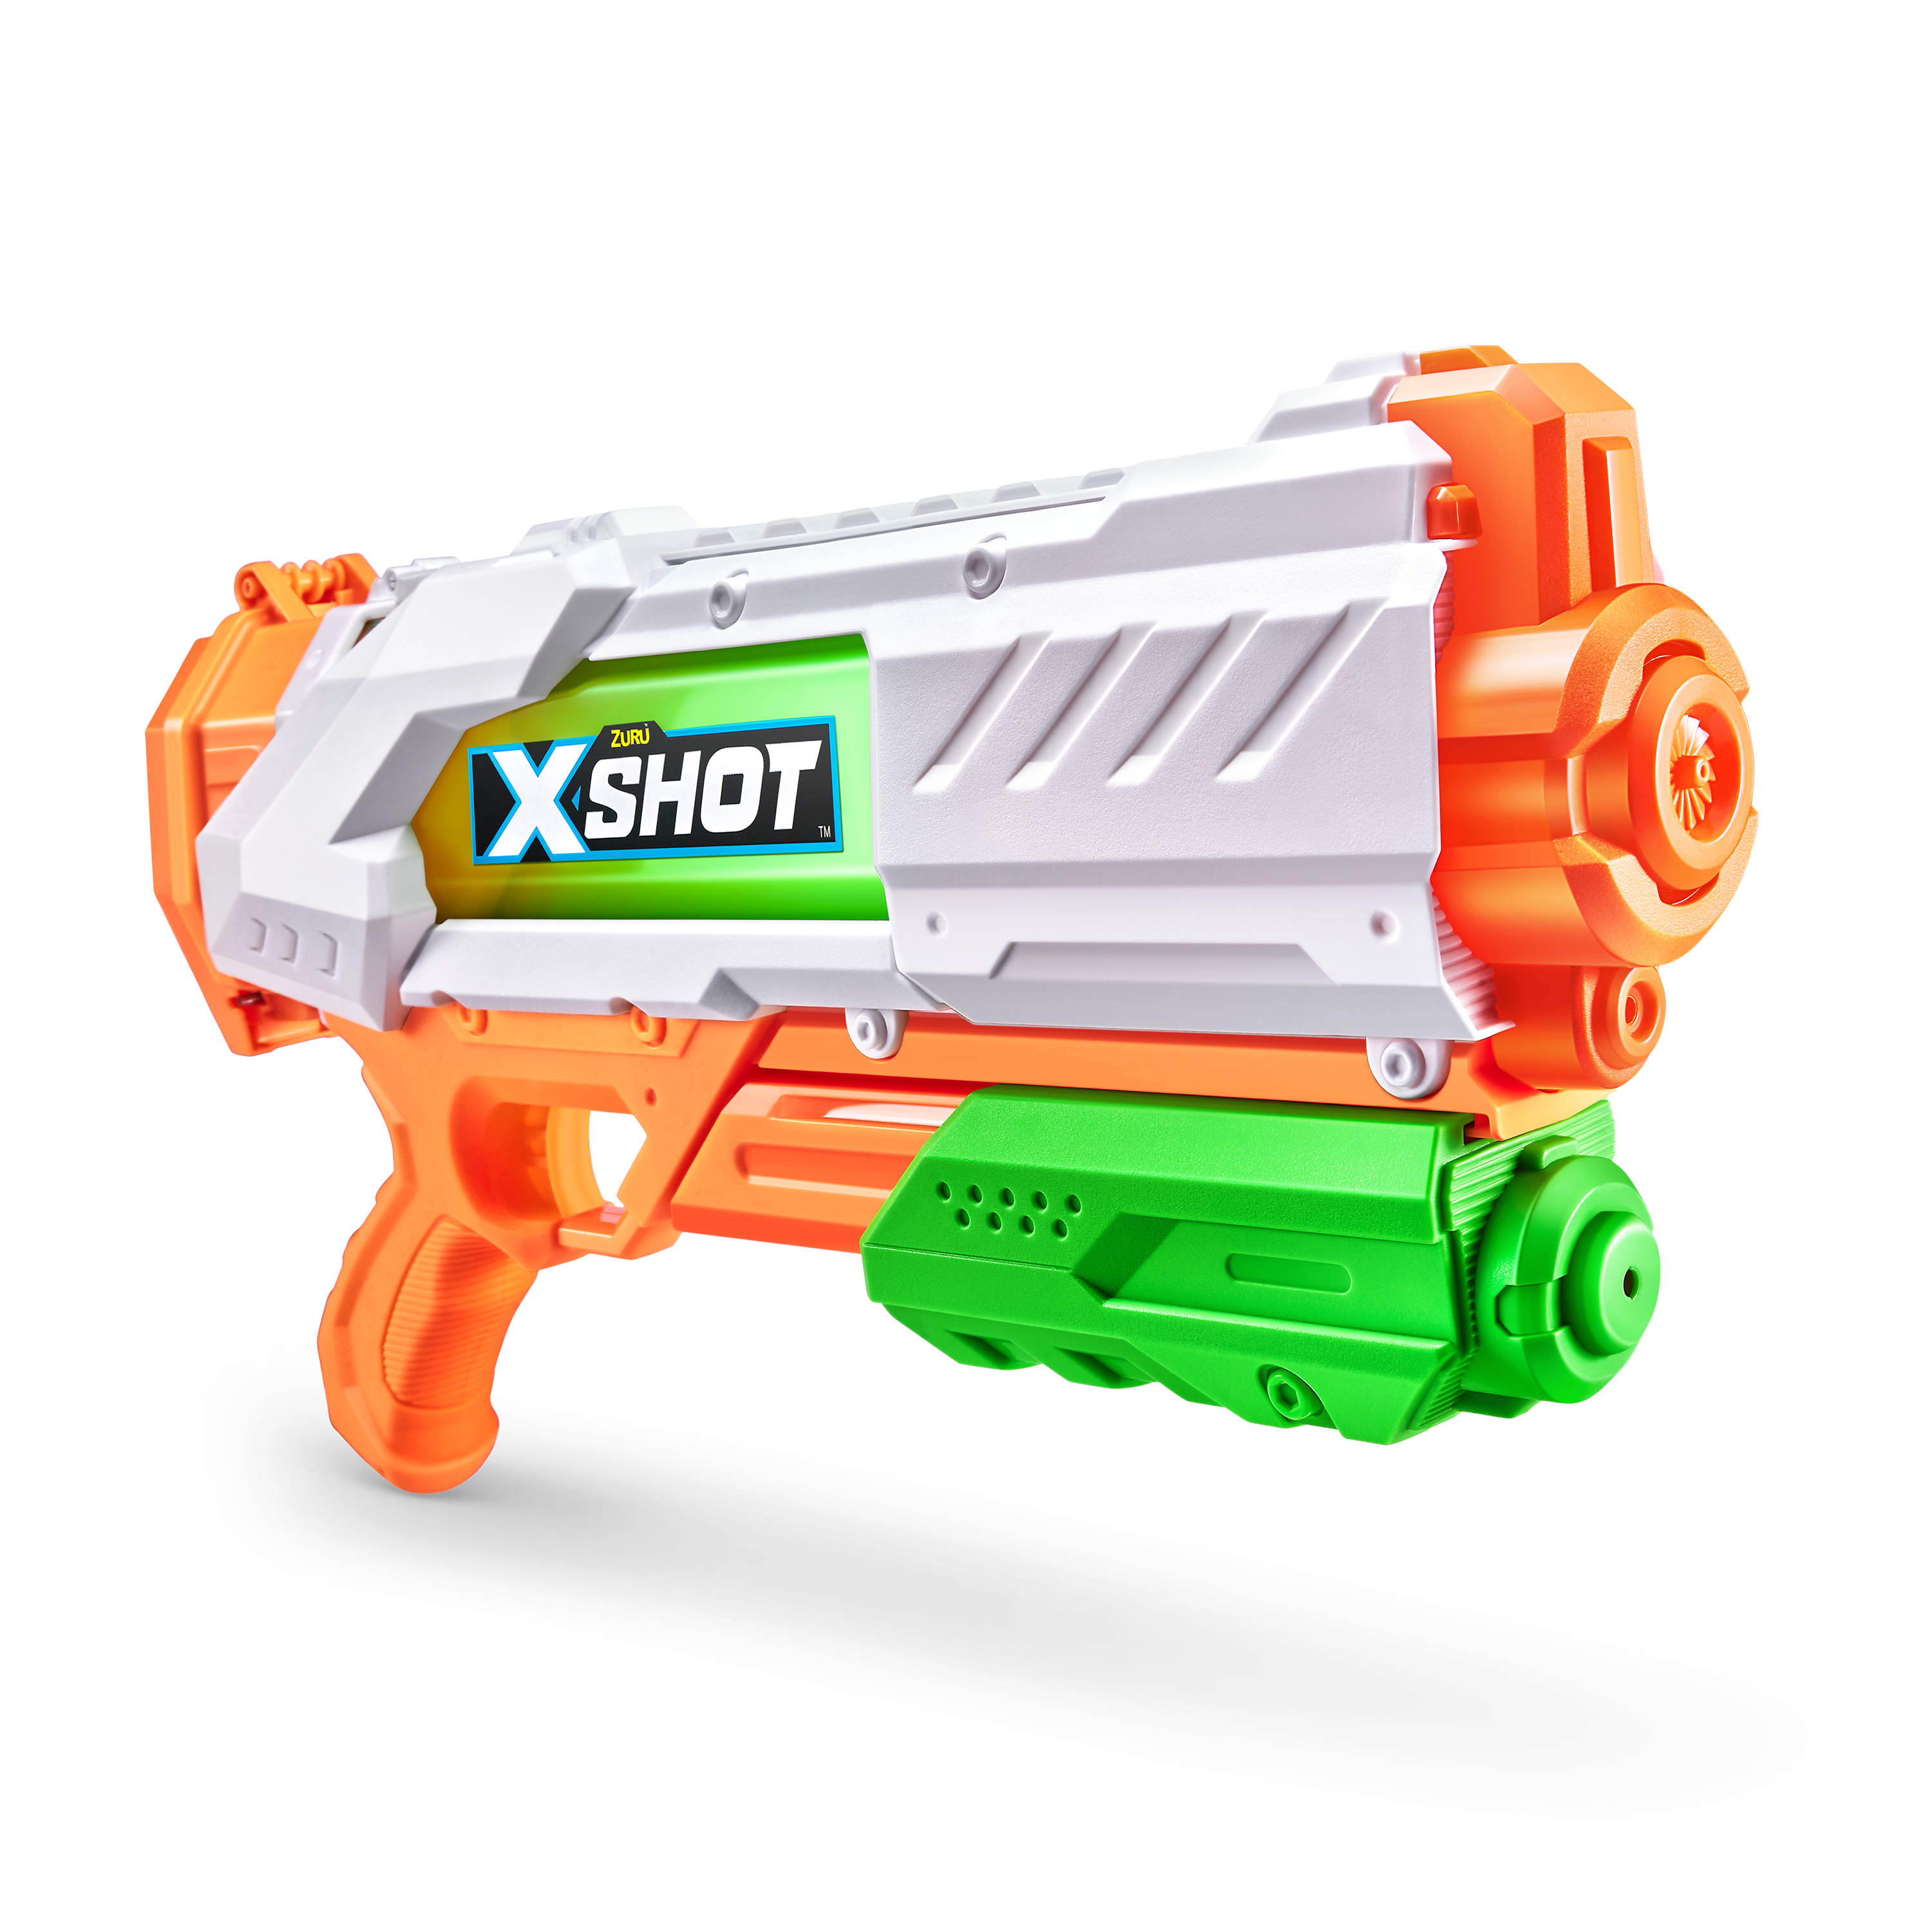 X-shot fast fill - X-SHOT